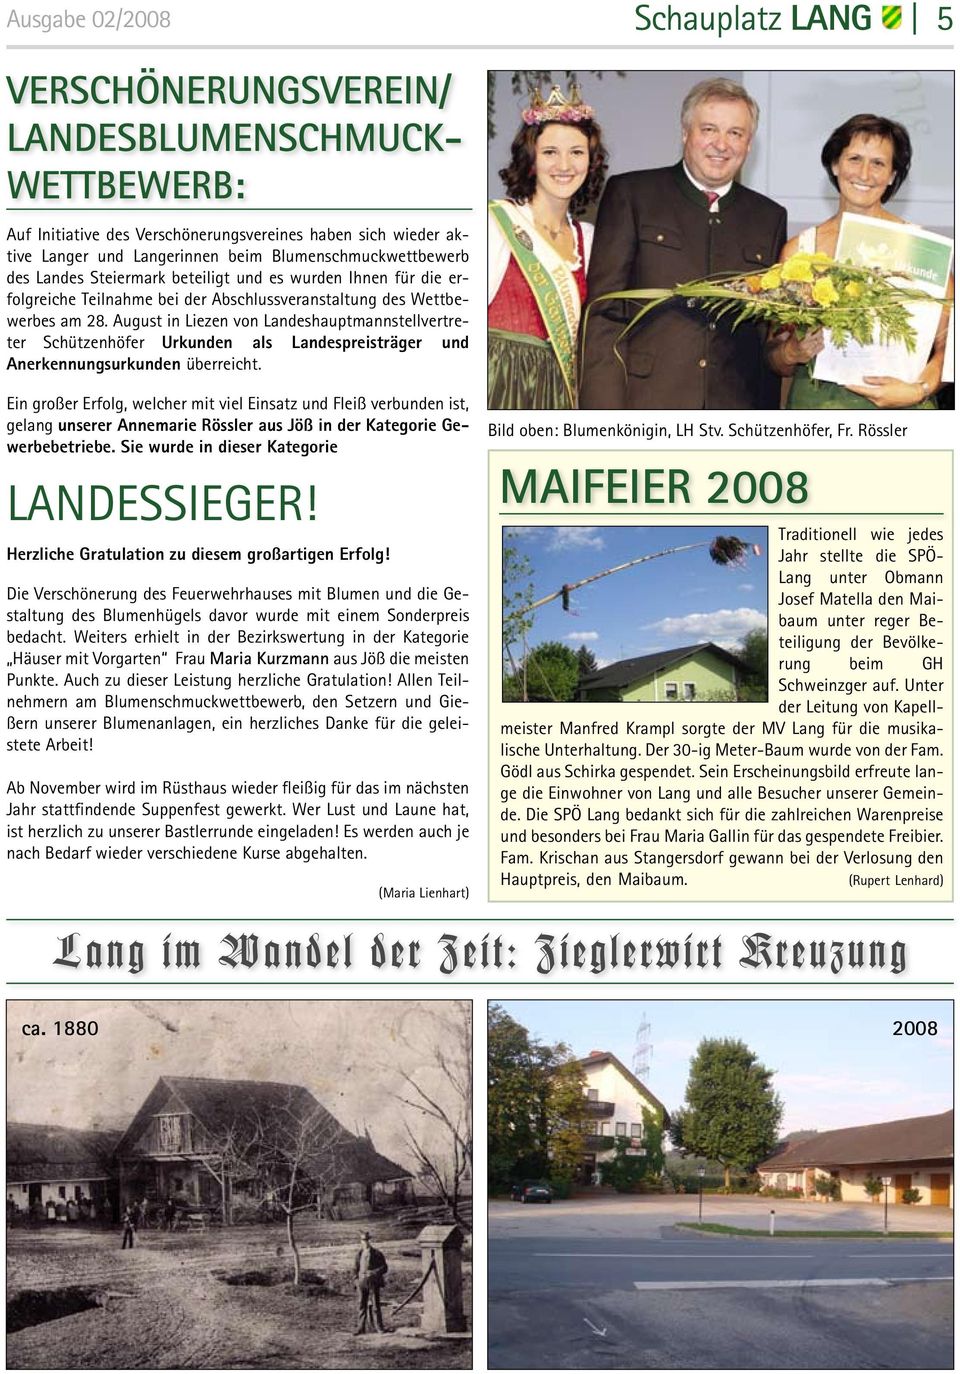 August in Liezen von Landeshauptmannstellvertreter Schützenhöfer Urkunden als Landespreisträger und Anerkennungsurkunden überreicht.